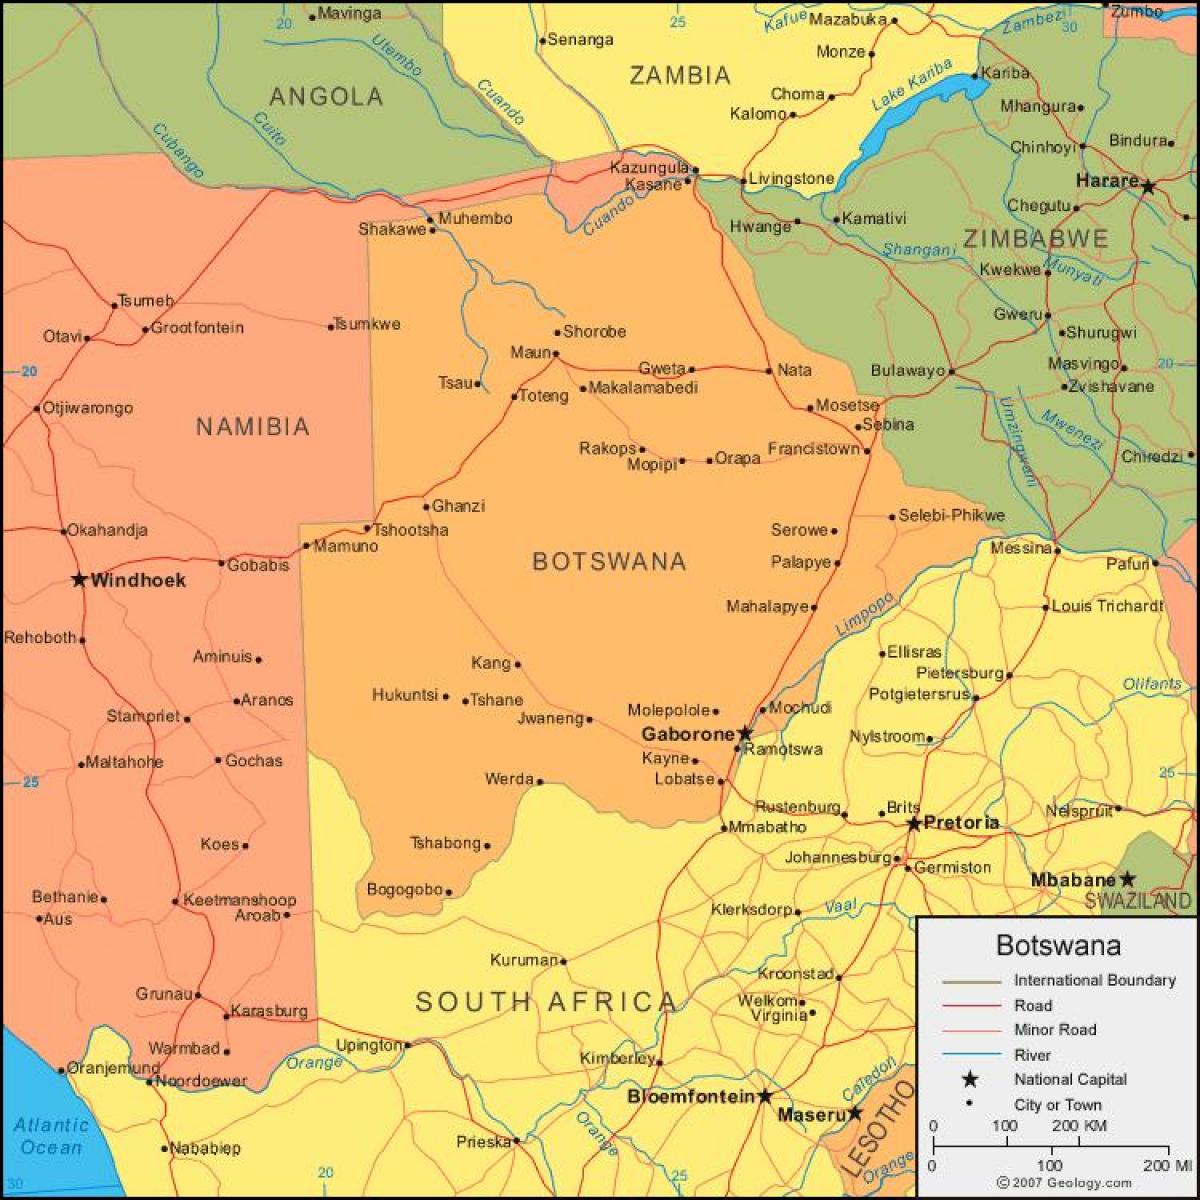 kort over Botswana, der viser alle landsbyer